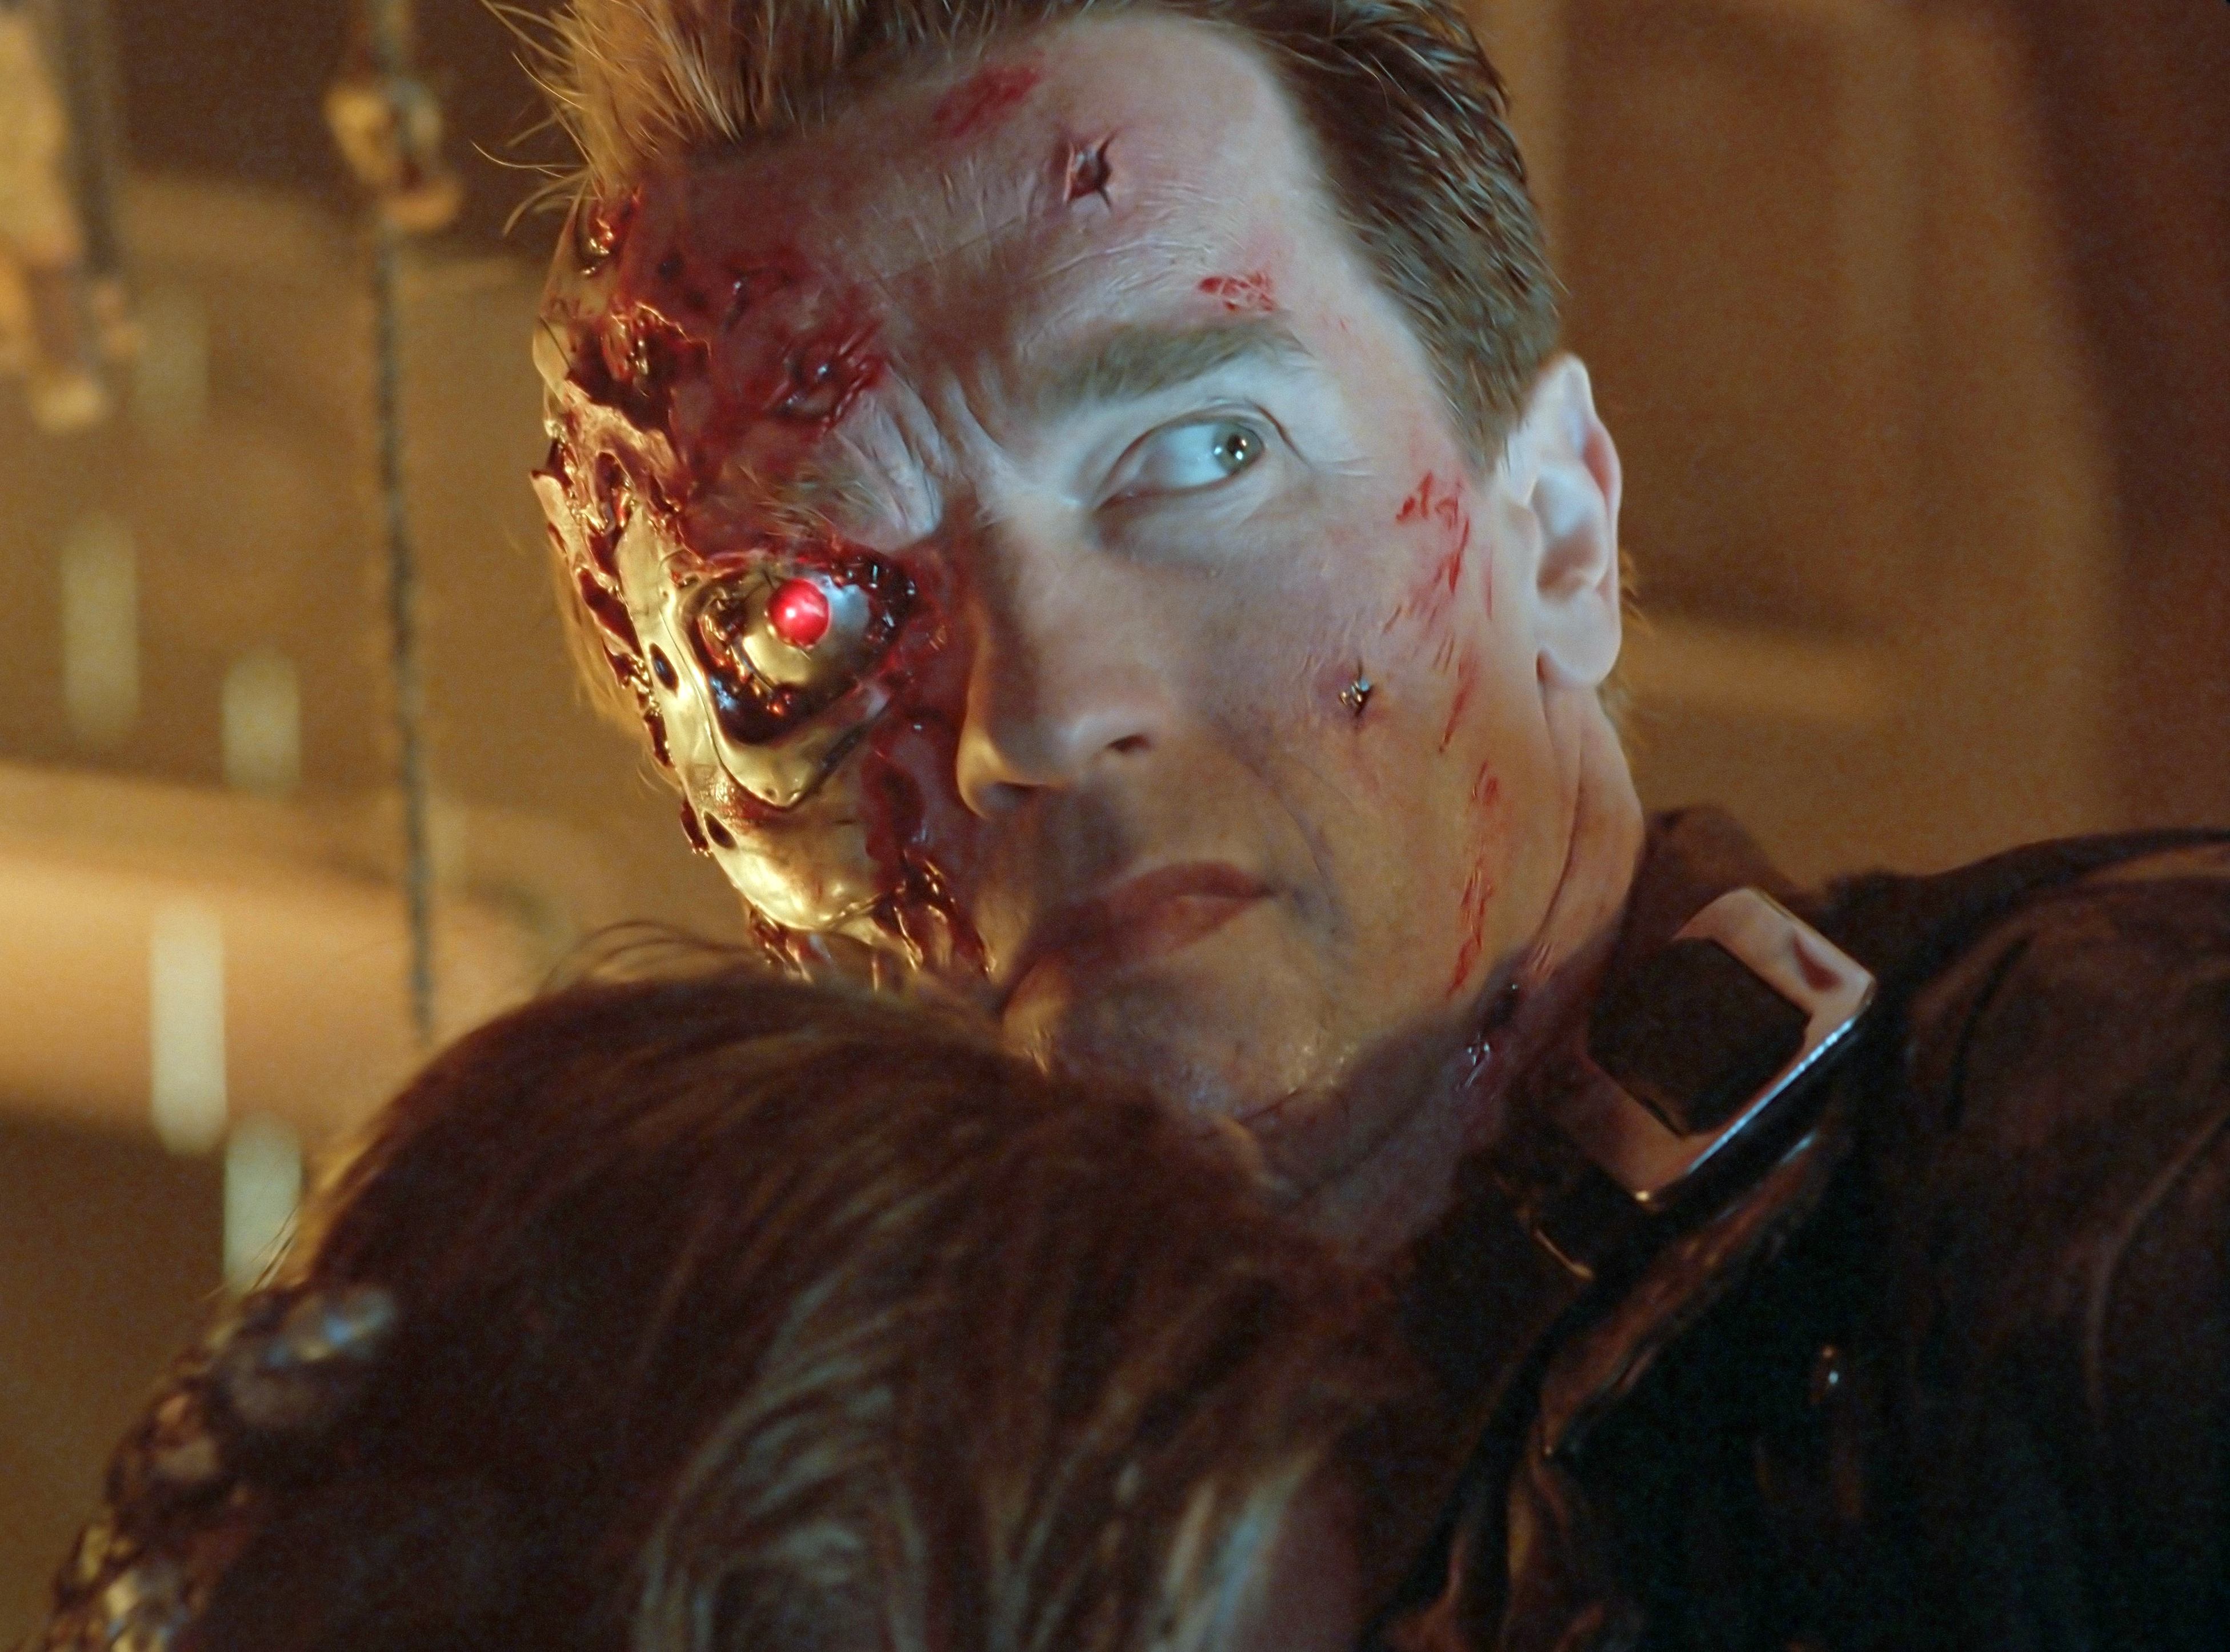 Terminator 2 3D Ending Battle Damage Make-Up